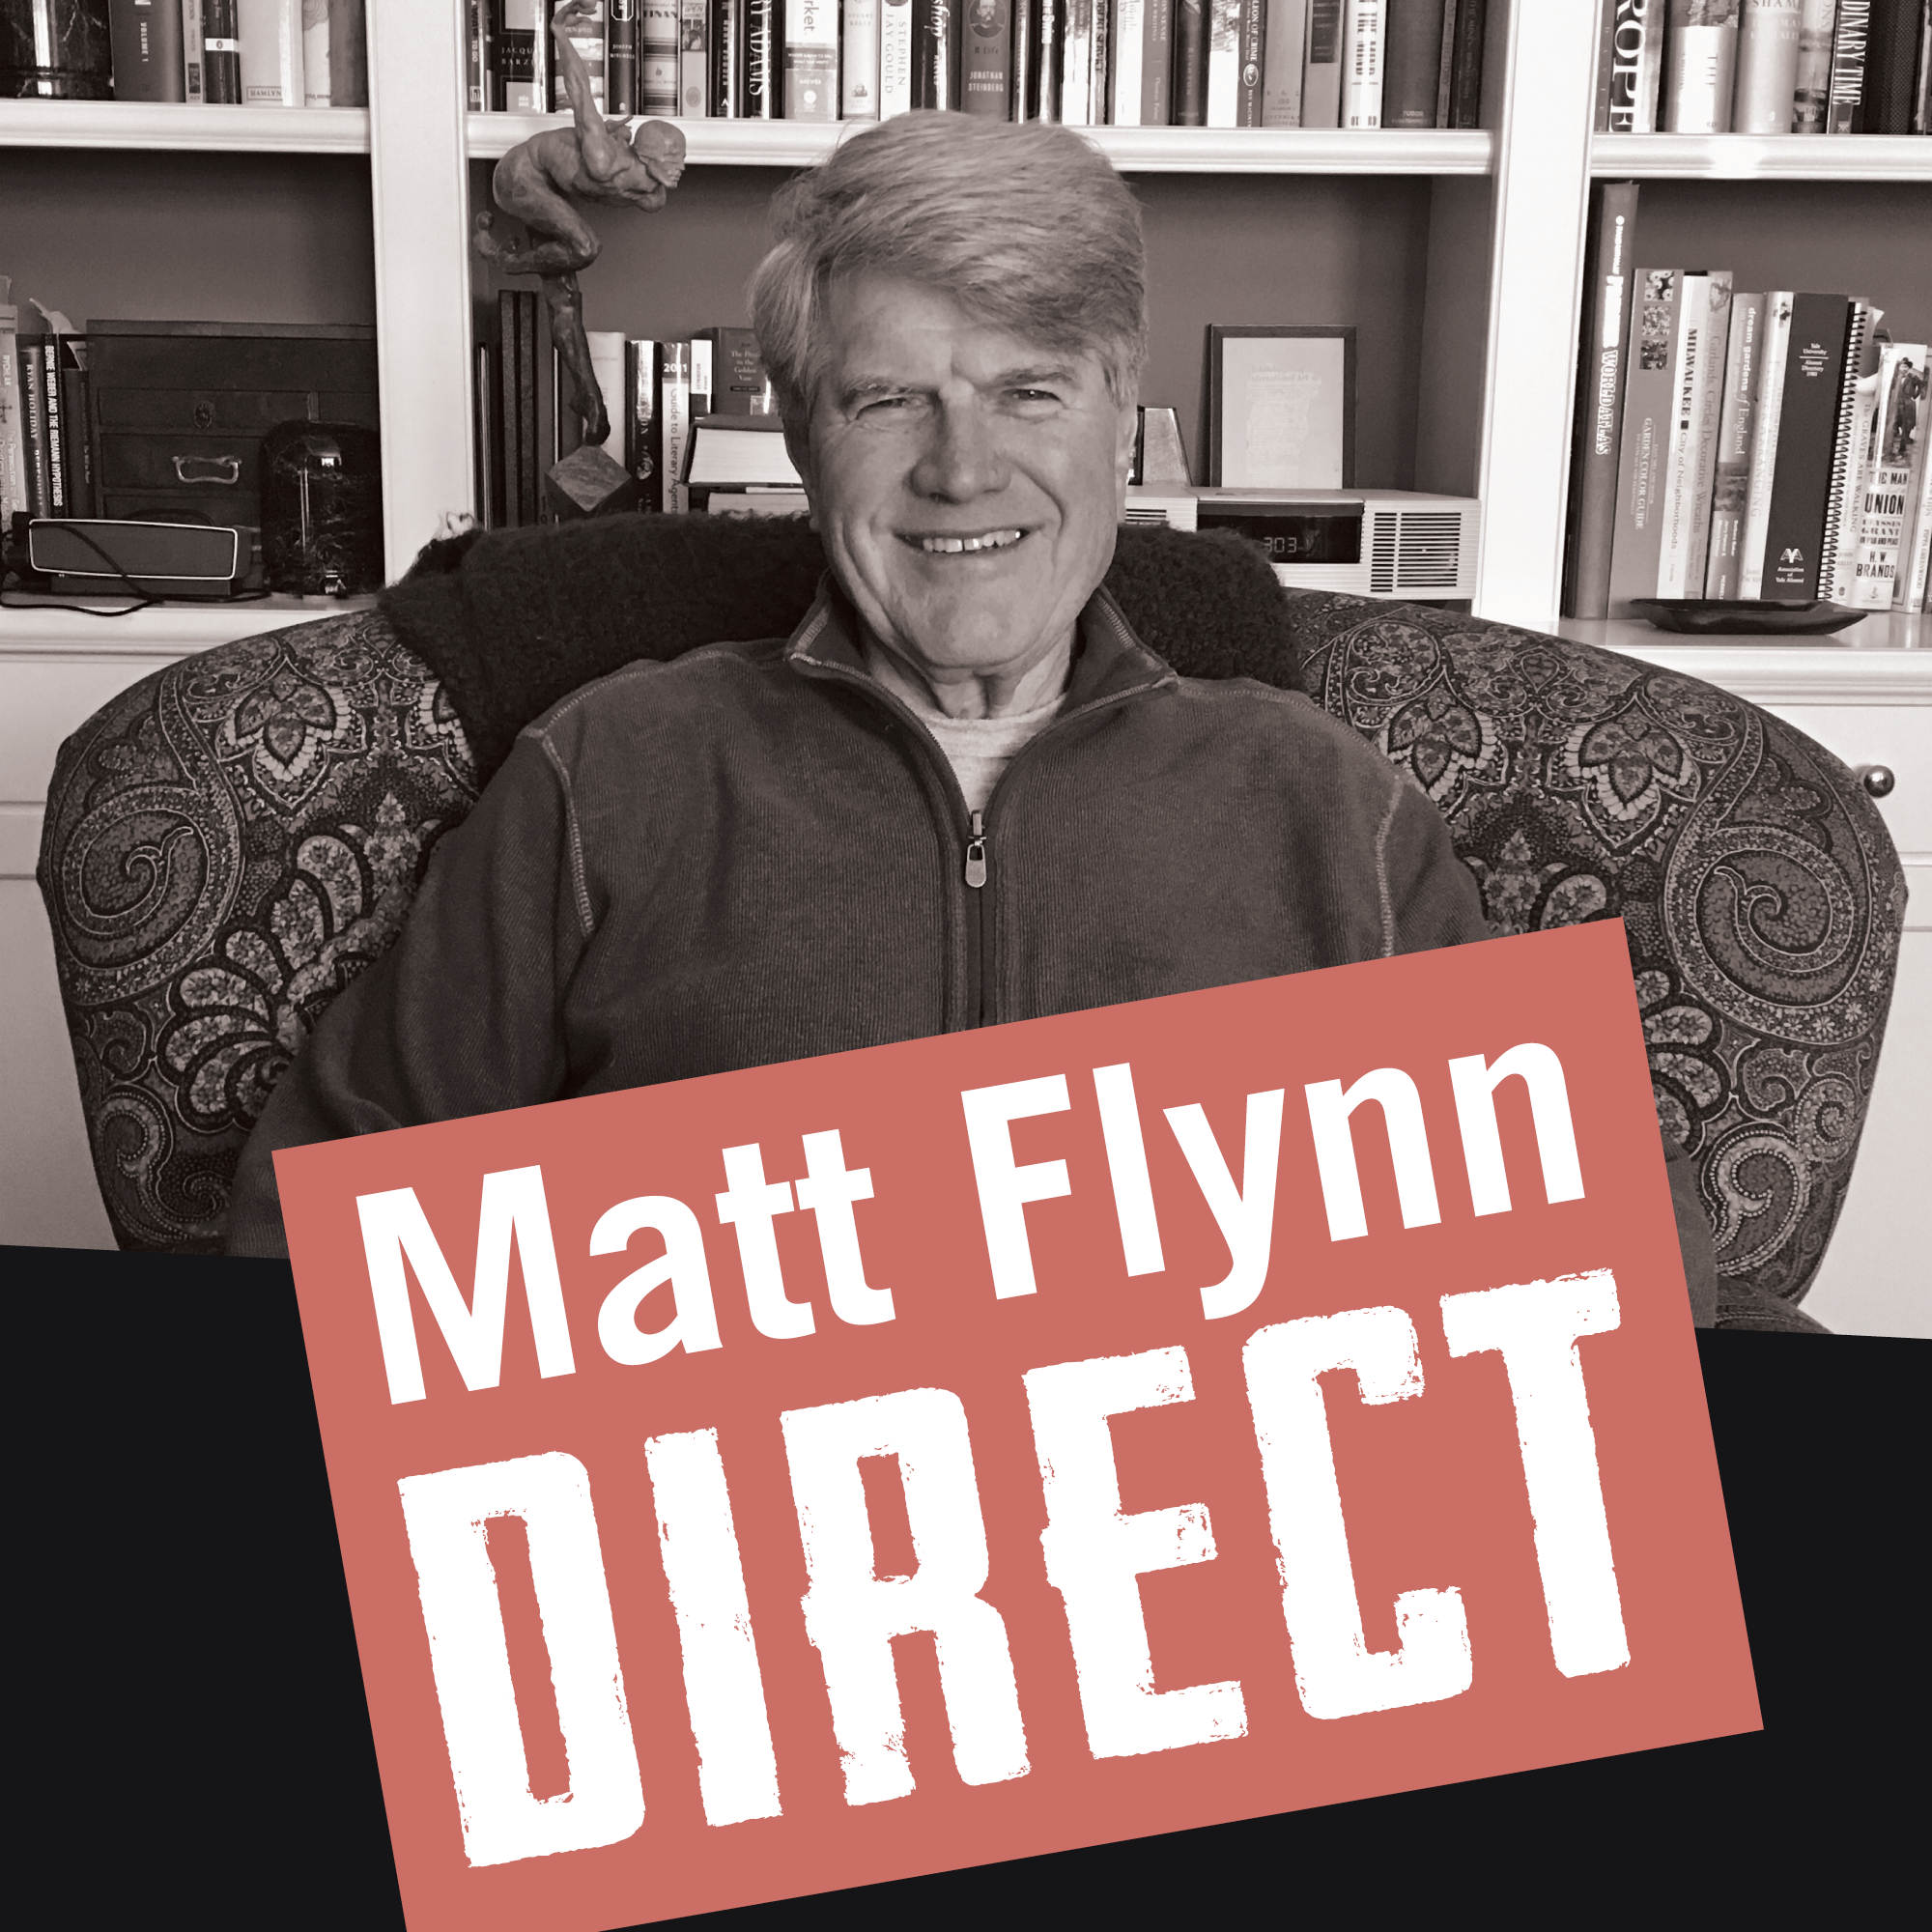 Matt Flynn Direct